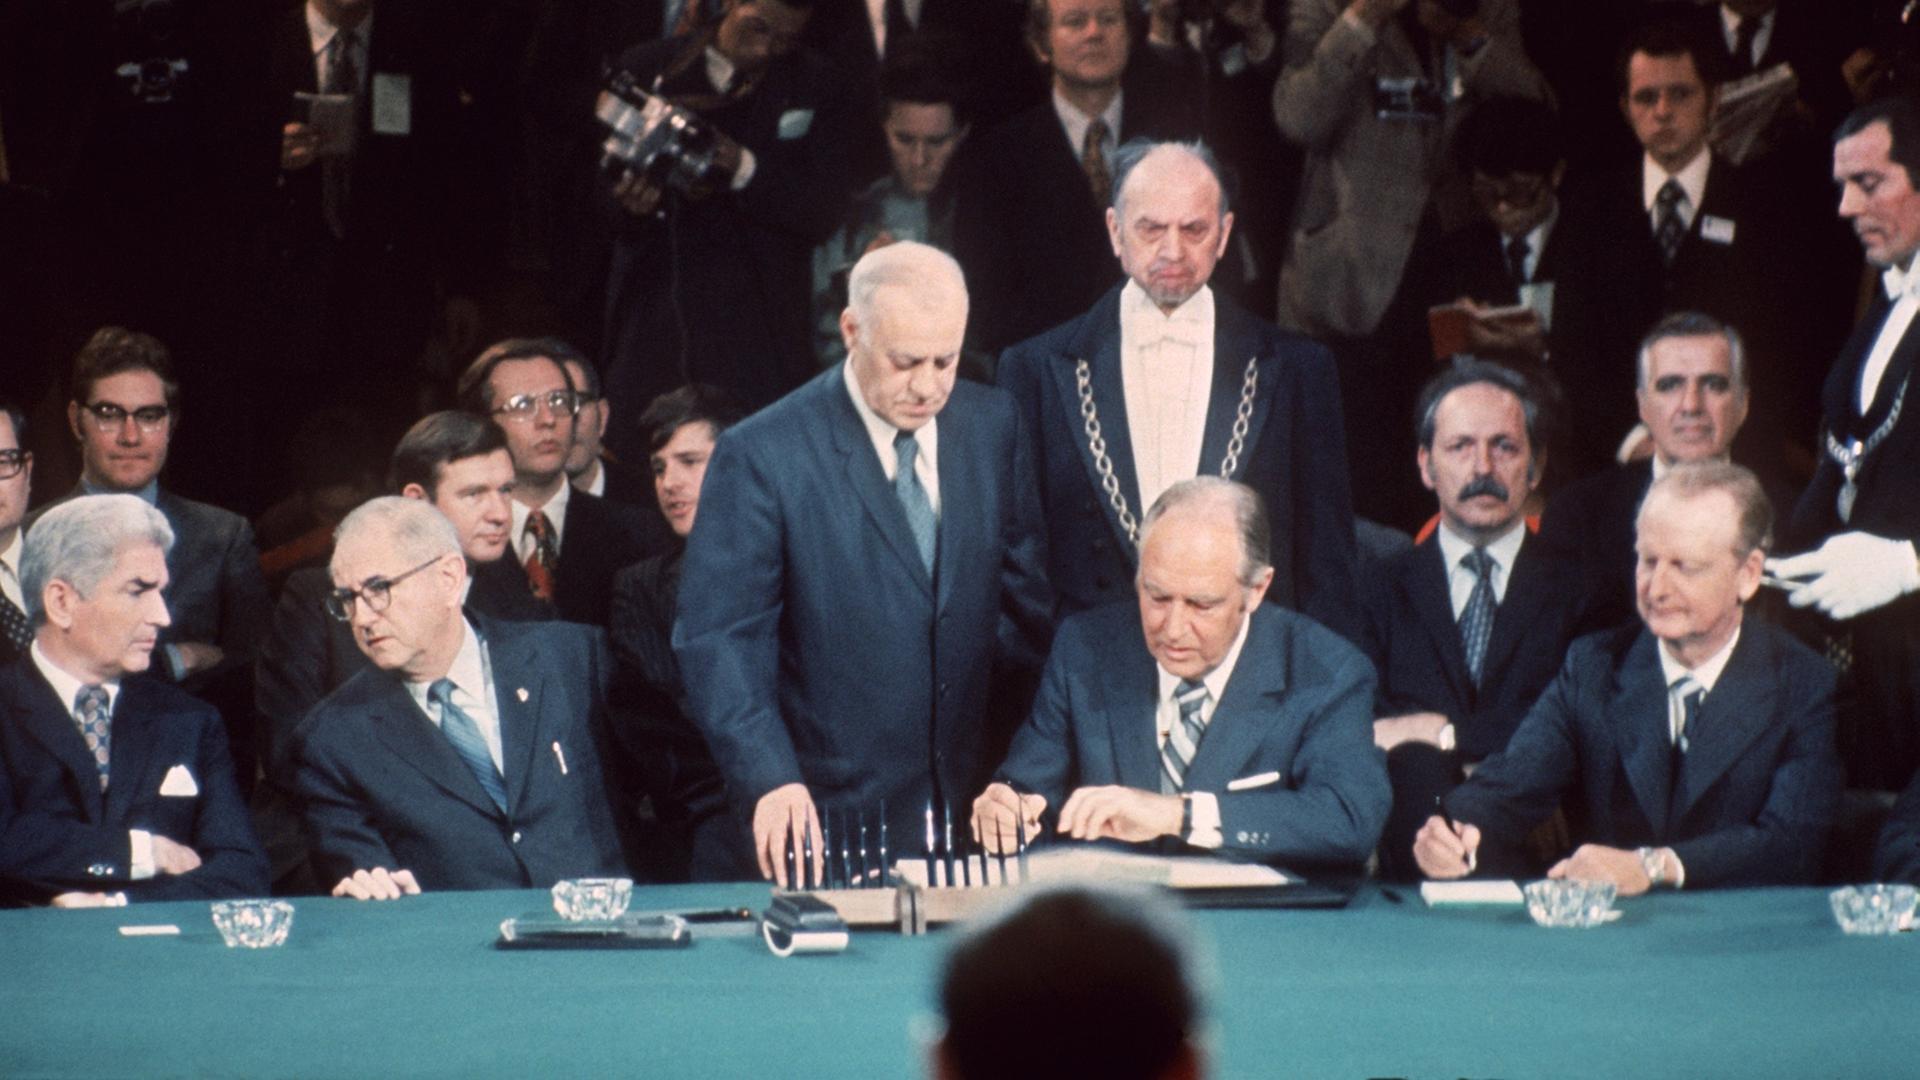 Der US-Außenminister William P. Rogers (Mitte) unterzeichnet am 27. Januar 1973 im Pariser Hotel Majestic das Waffenstillstandsabkommen zwischen den USA und Nordvietnam.